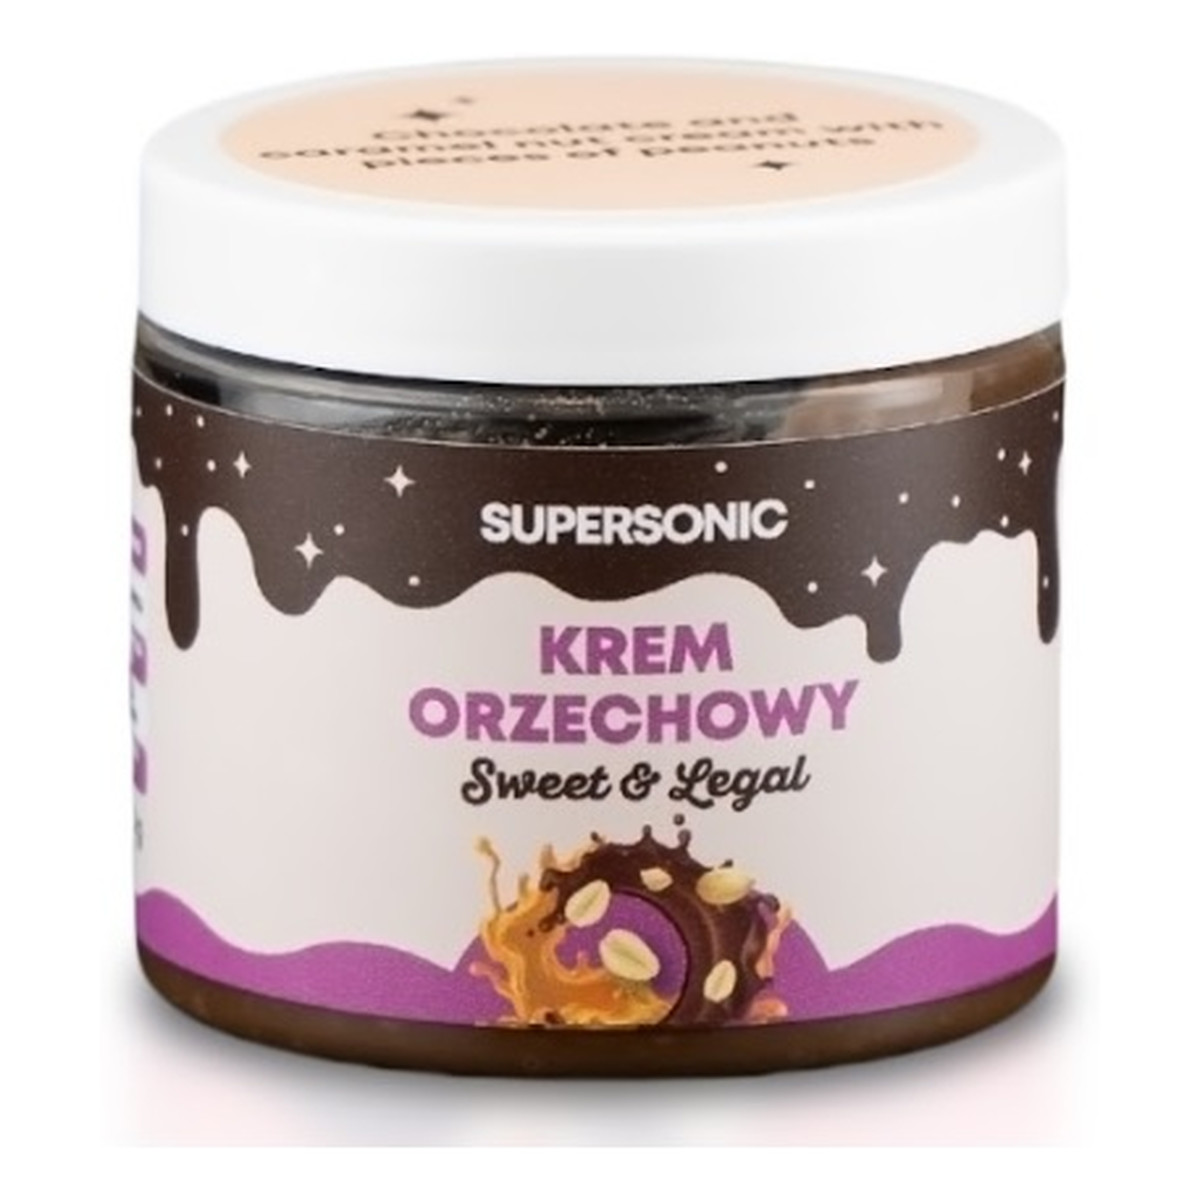 Supersonic Sweet&Legal orzechowy Krem proteinowy o smaku czekolady i karmelu z kawałkami orzechów 160g